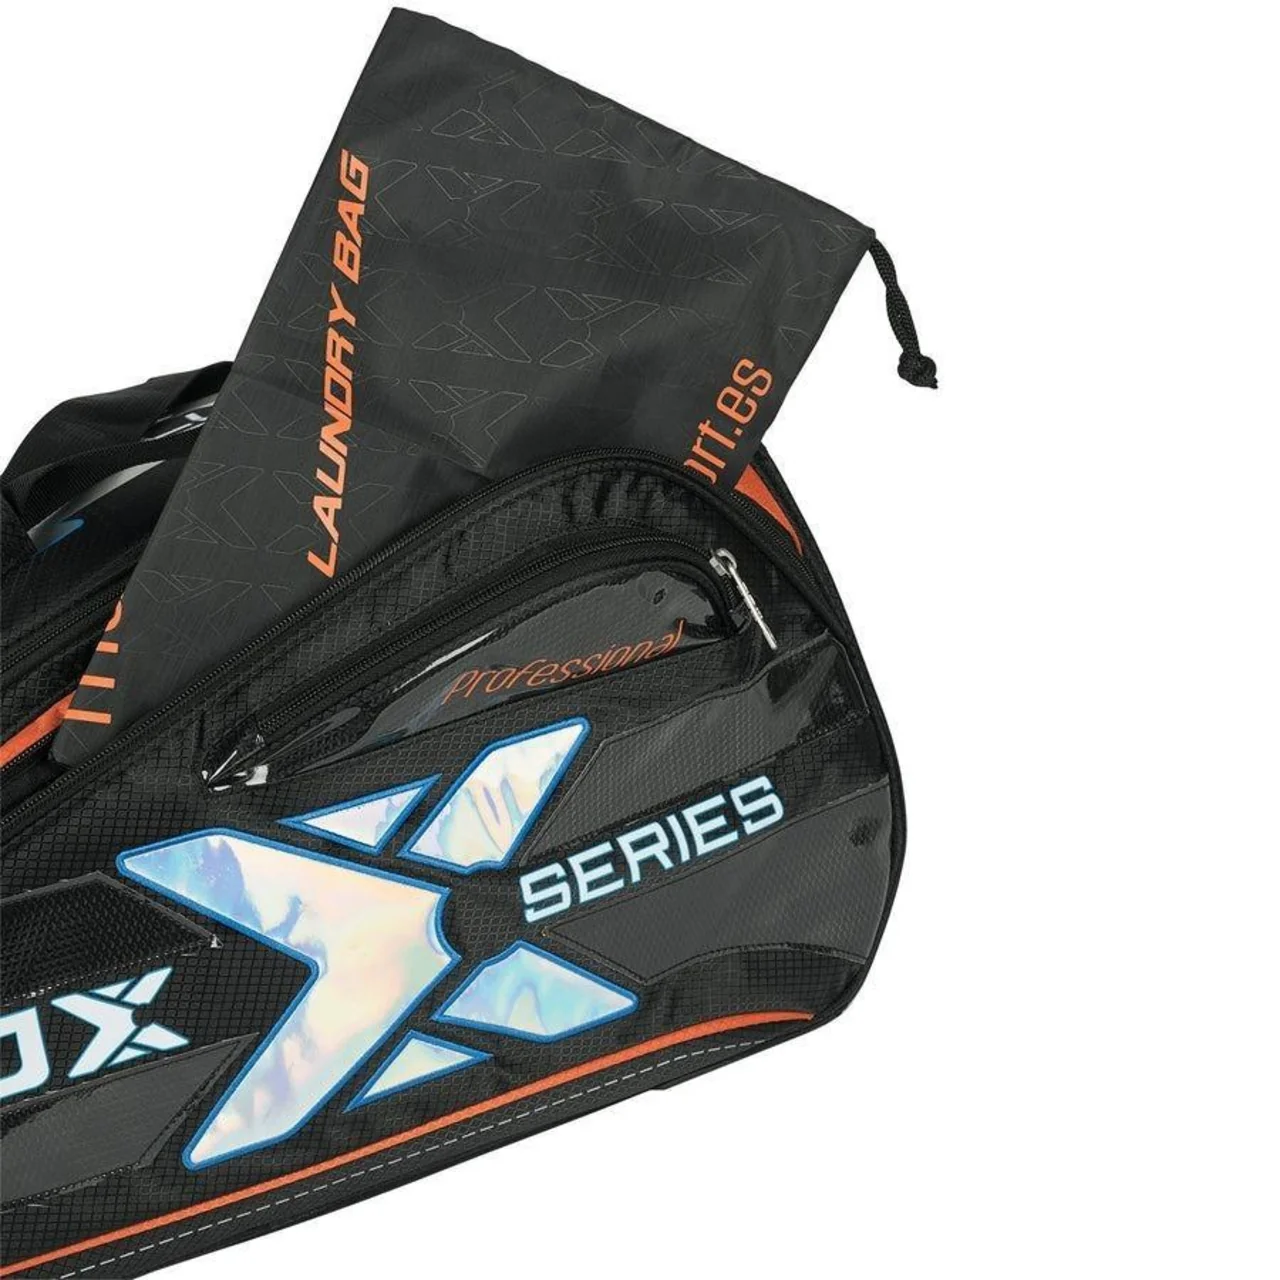 Nox ML10 Luxury Padel Bag Black